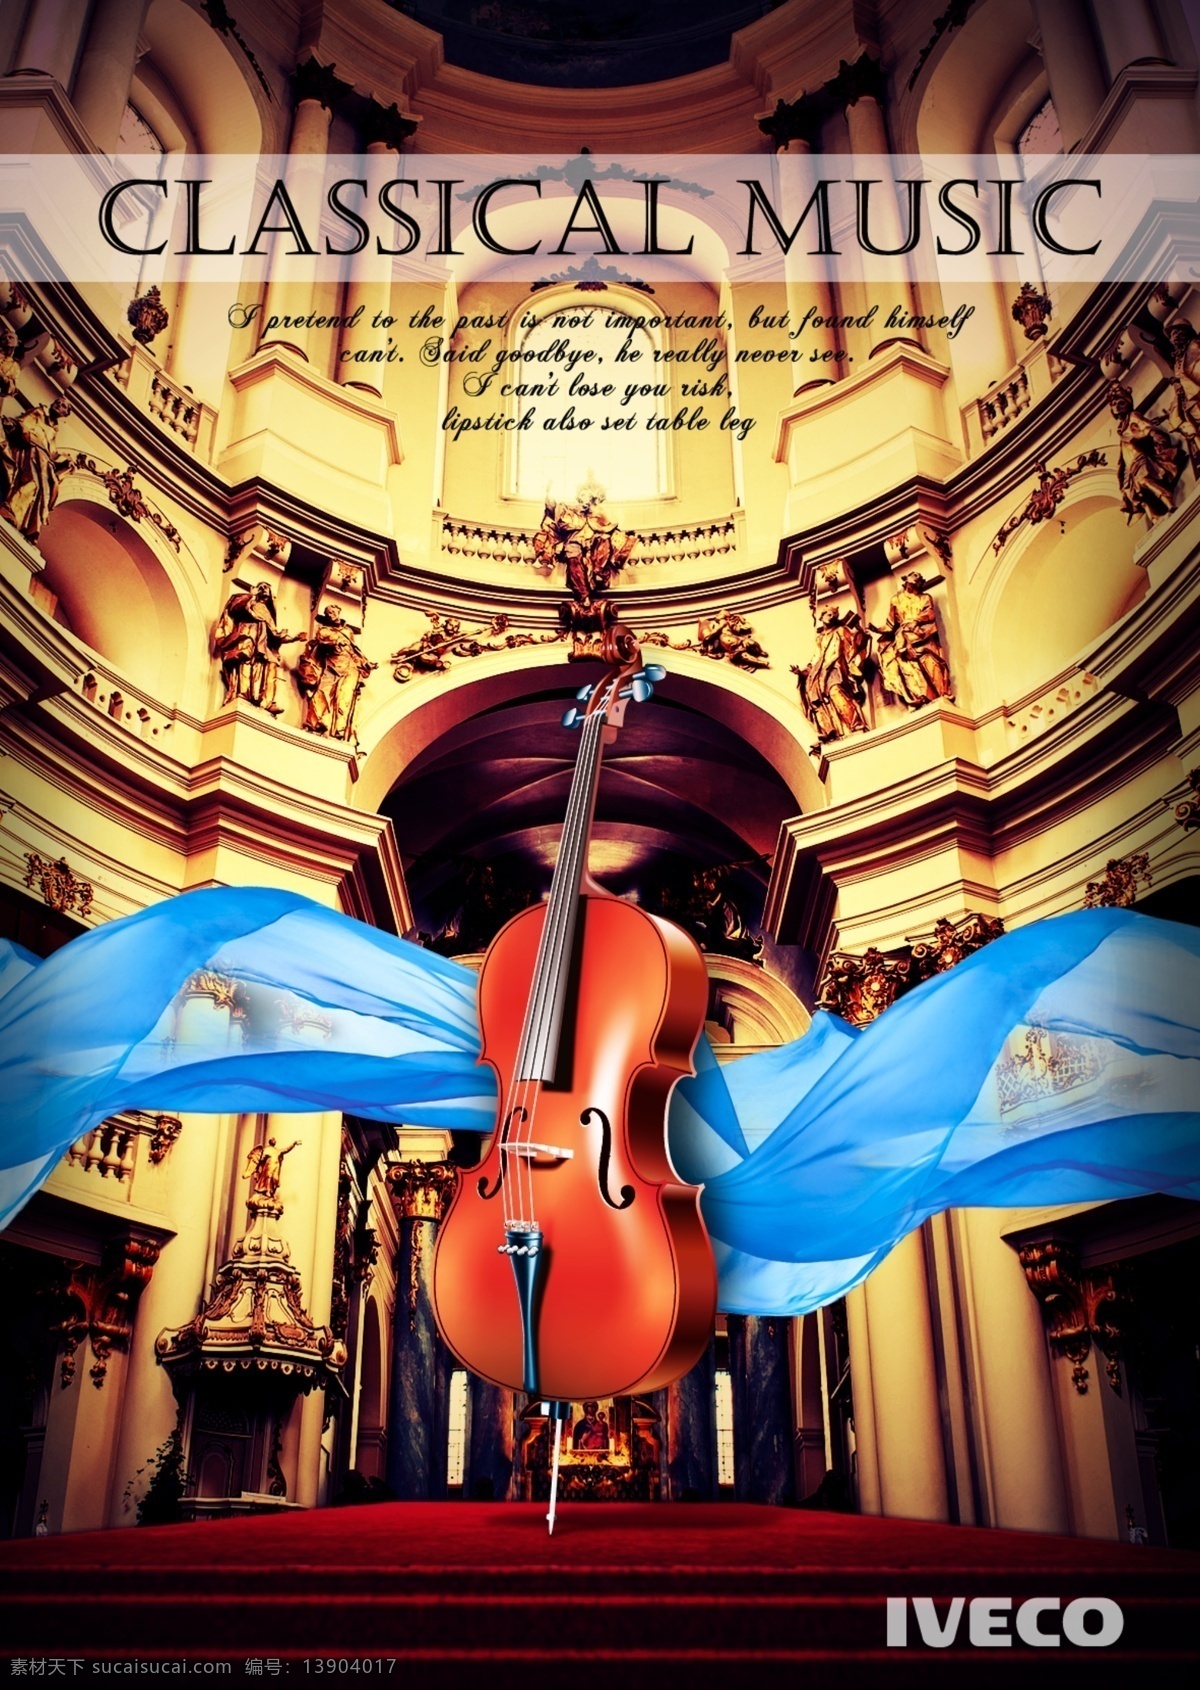 音乐书籍封面 音乐 唱歌 高雅 小提琴 殿堂 城堡 杂志设计 其他模版 广告设计模板 源文件